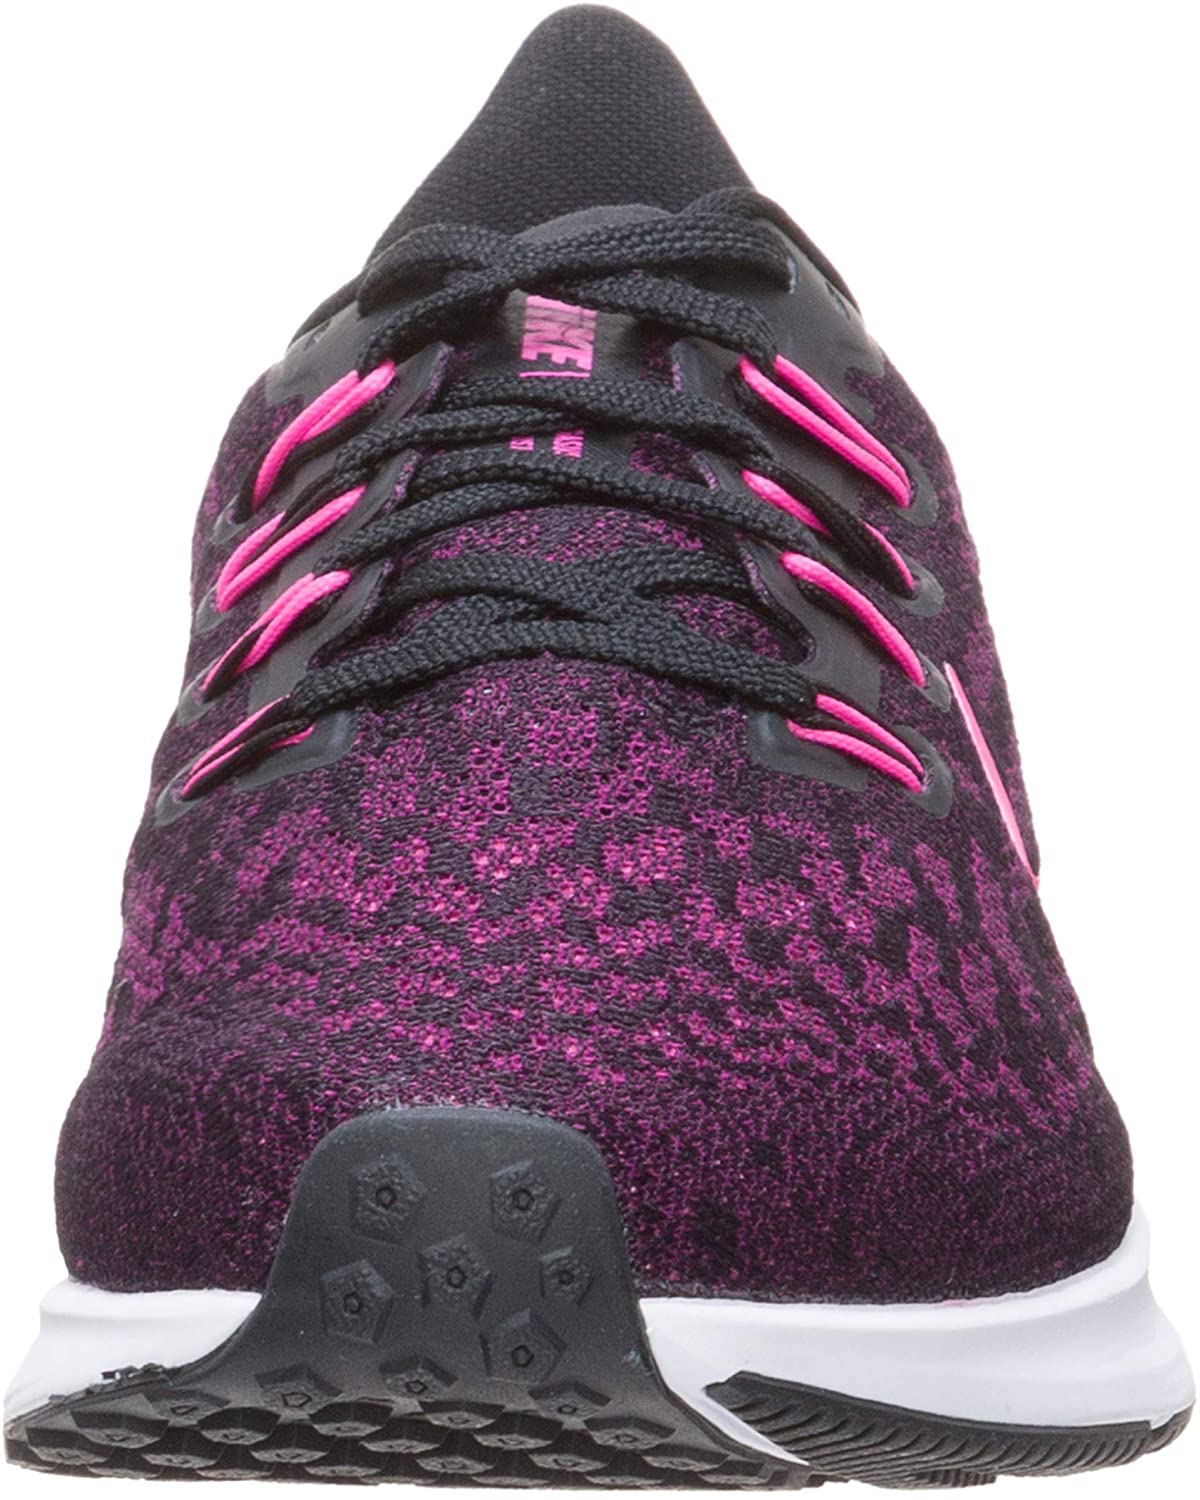 Nike Women's Air Zoom Pegasus 36 Running Shoe, Black/Pink/Berry, 8.5 B(M) US - image 4 of 7